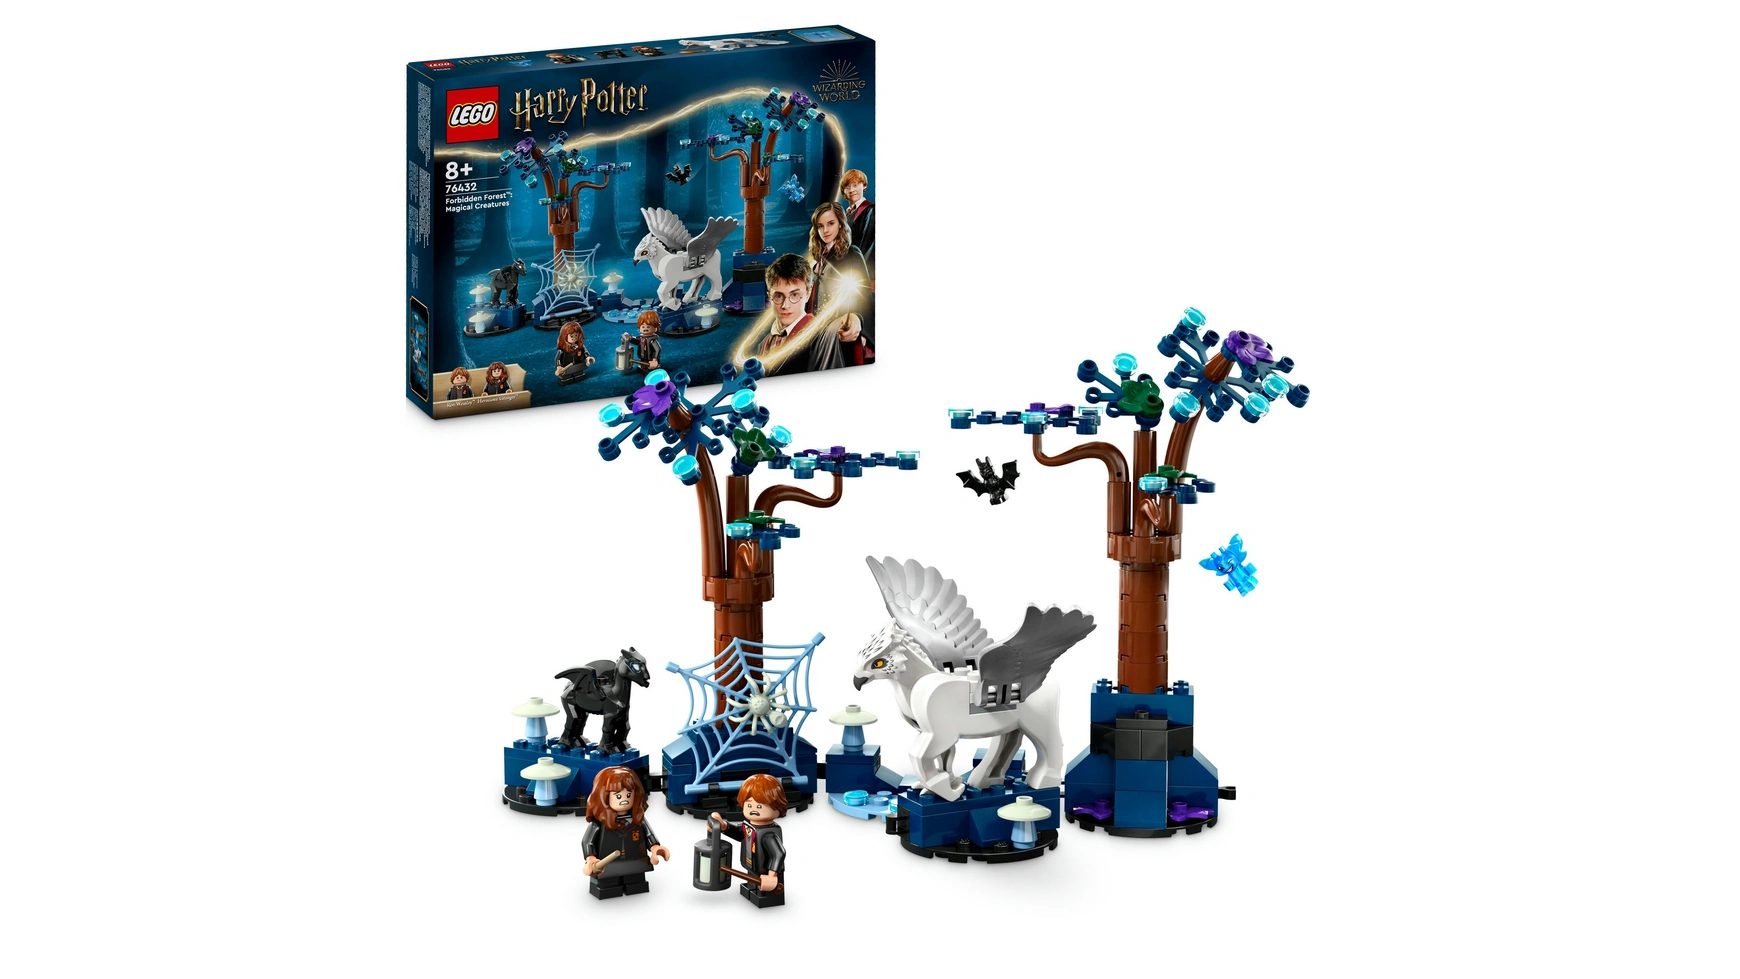 Lego Harry Potter Запретный лес: Волшебные существа набор волшебные существа севера эгеркранс ю шоколад кэт 12 как дожить до пенсии 60г